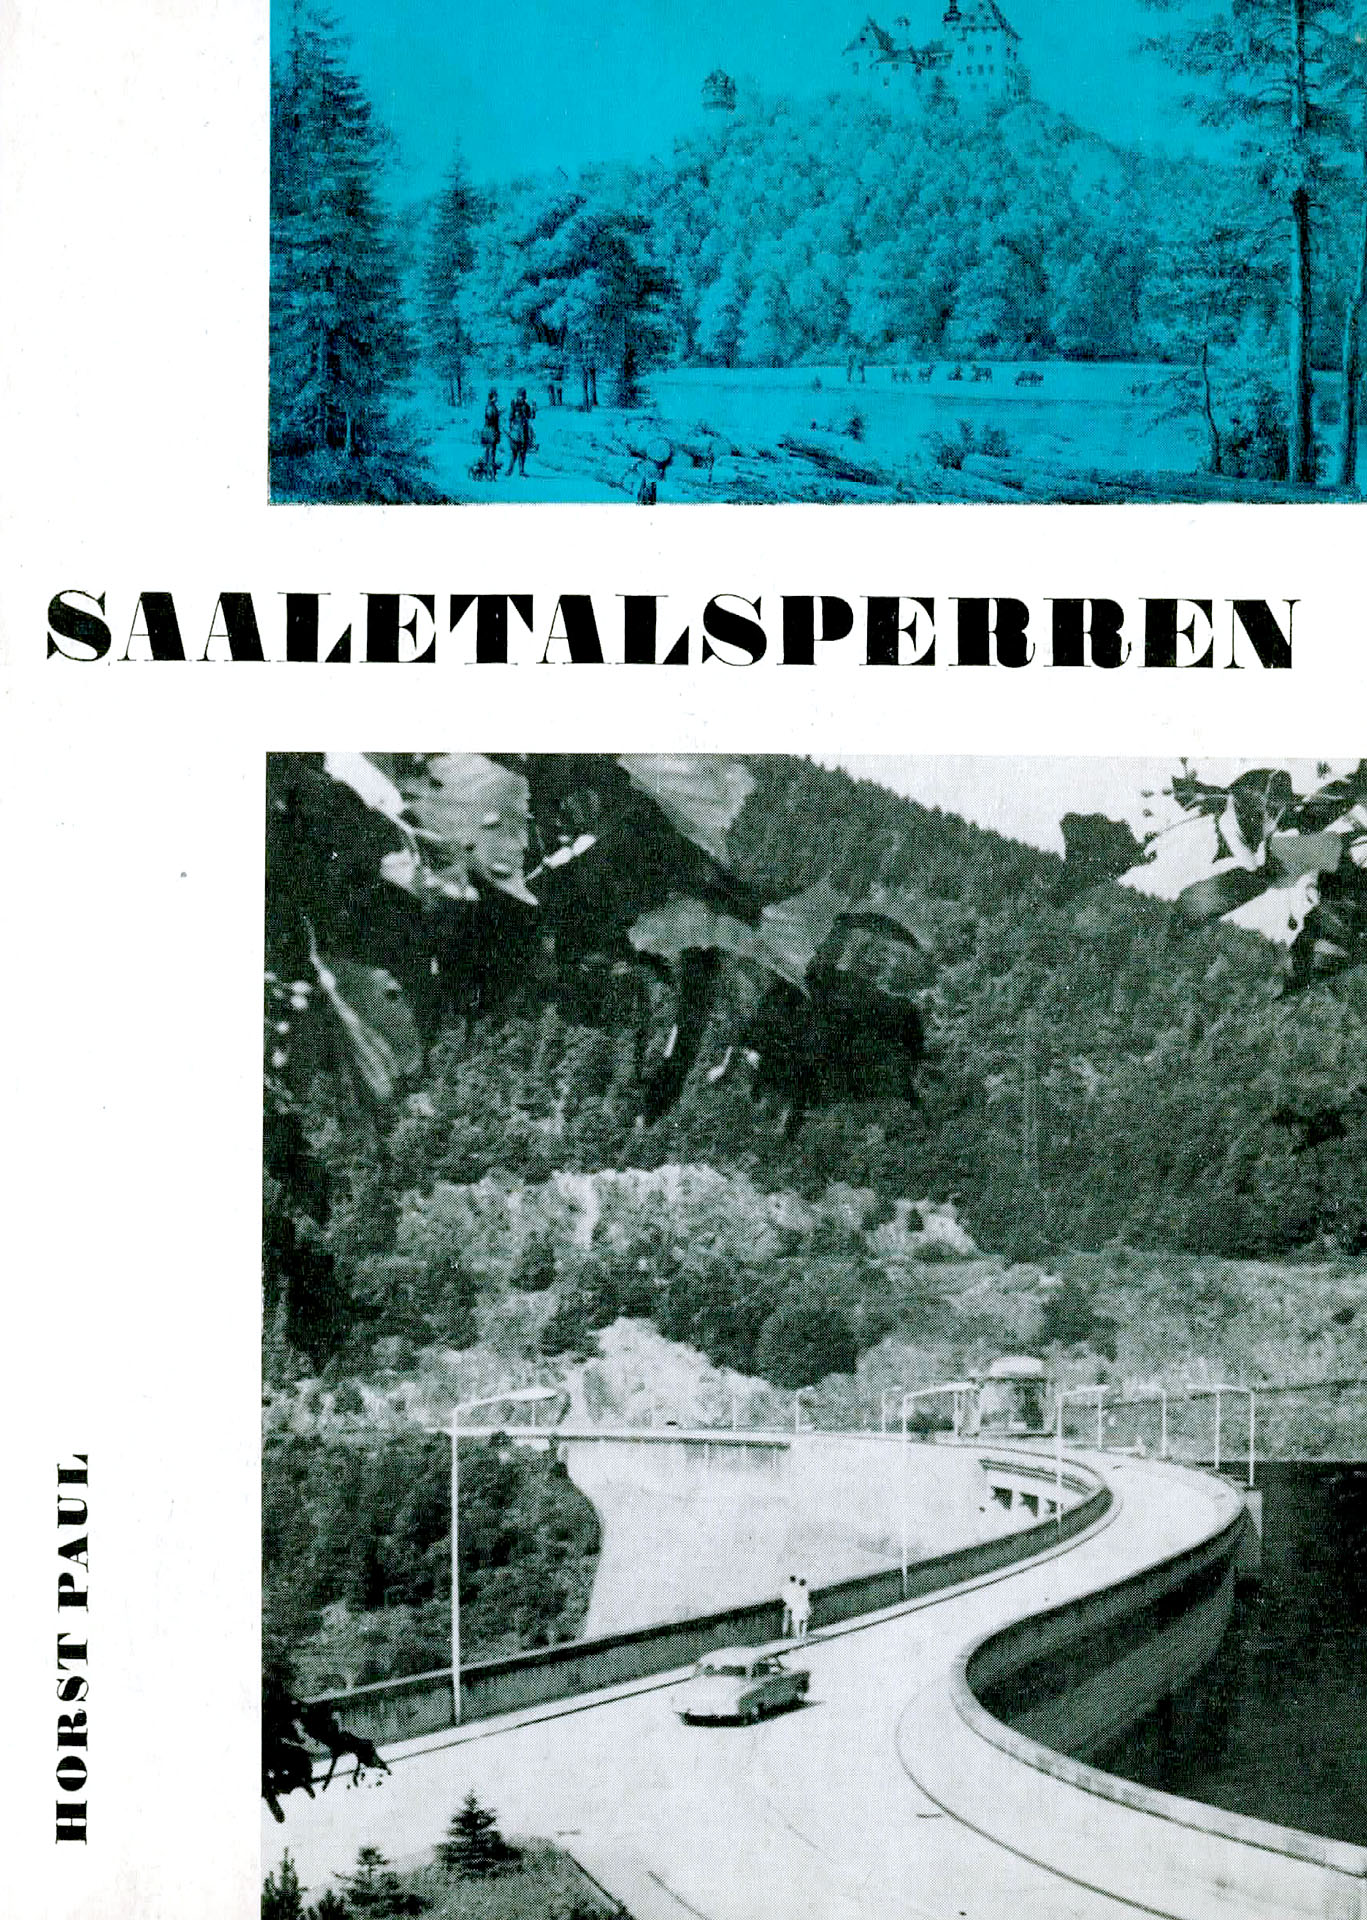 Saaletalsperren - Paul, Horst